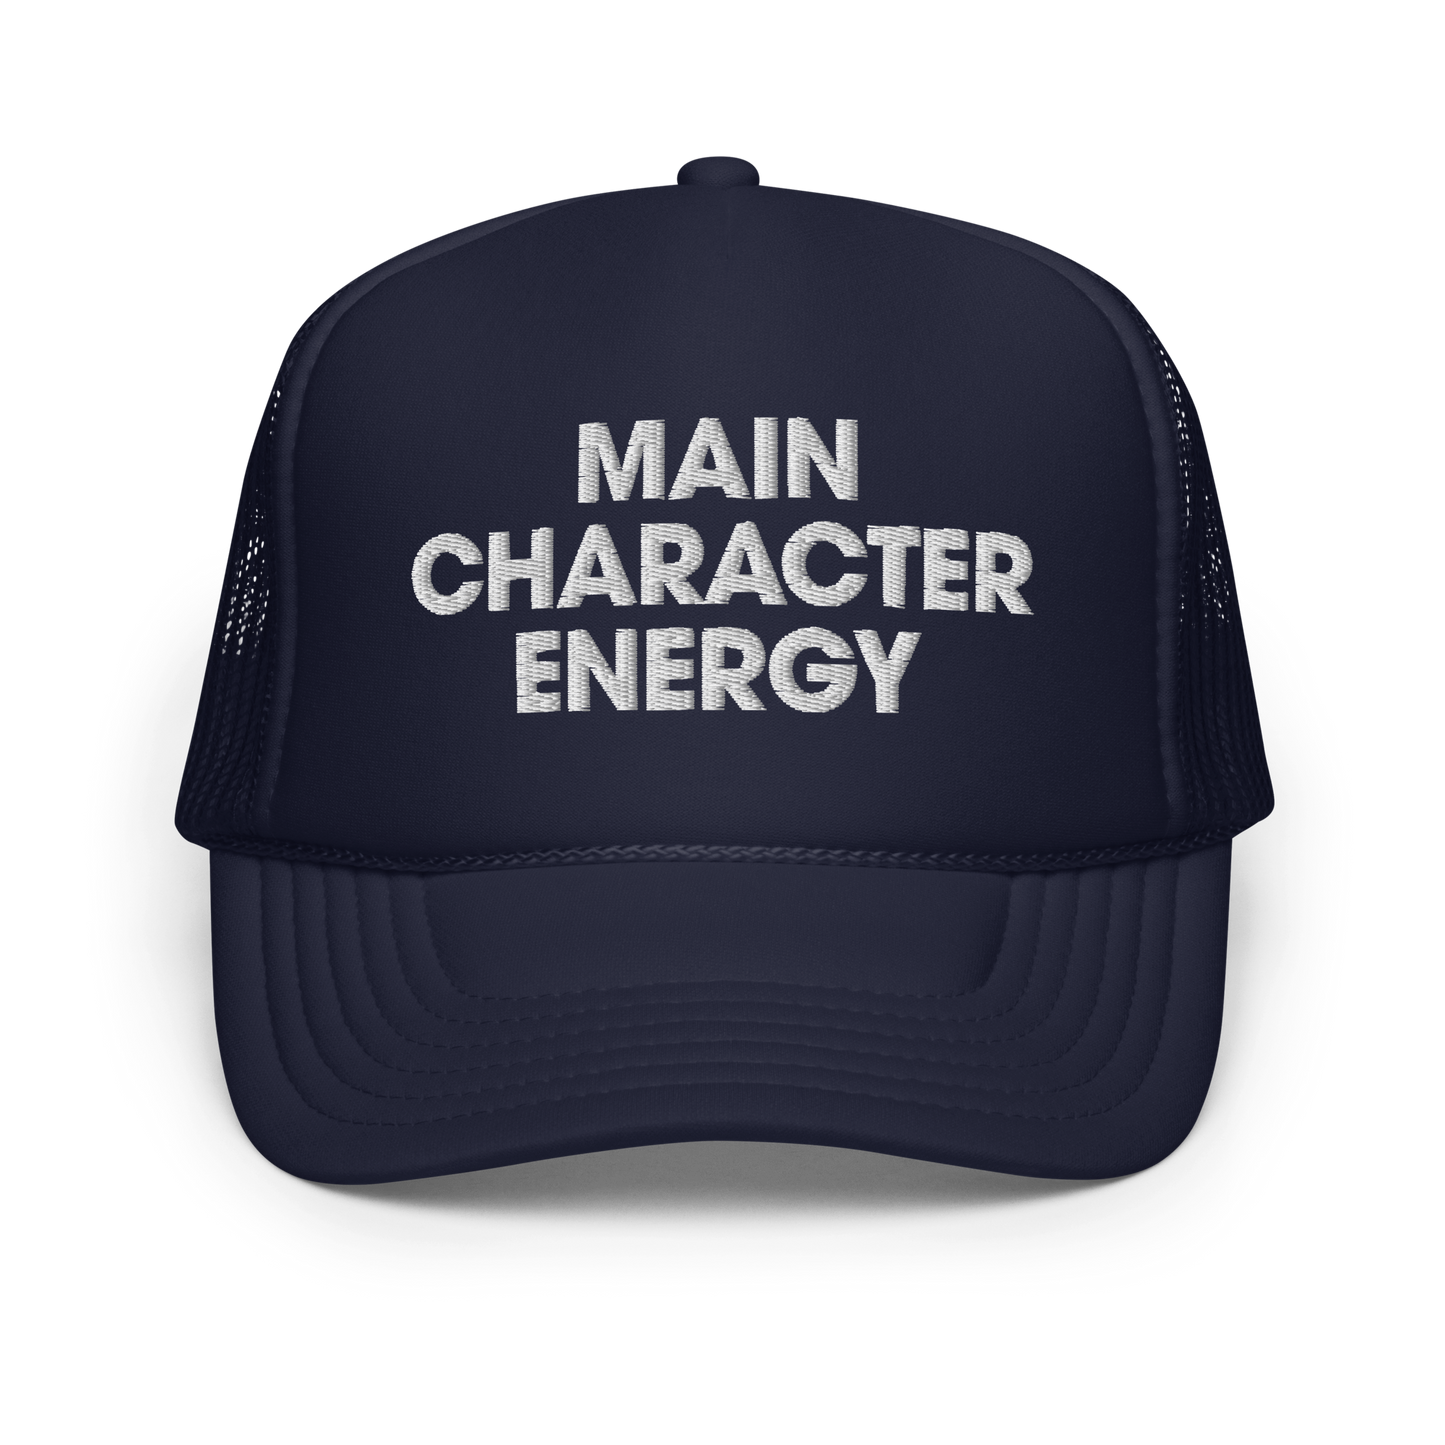 Main Character Energy Trucker